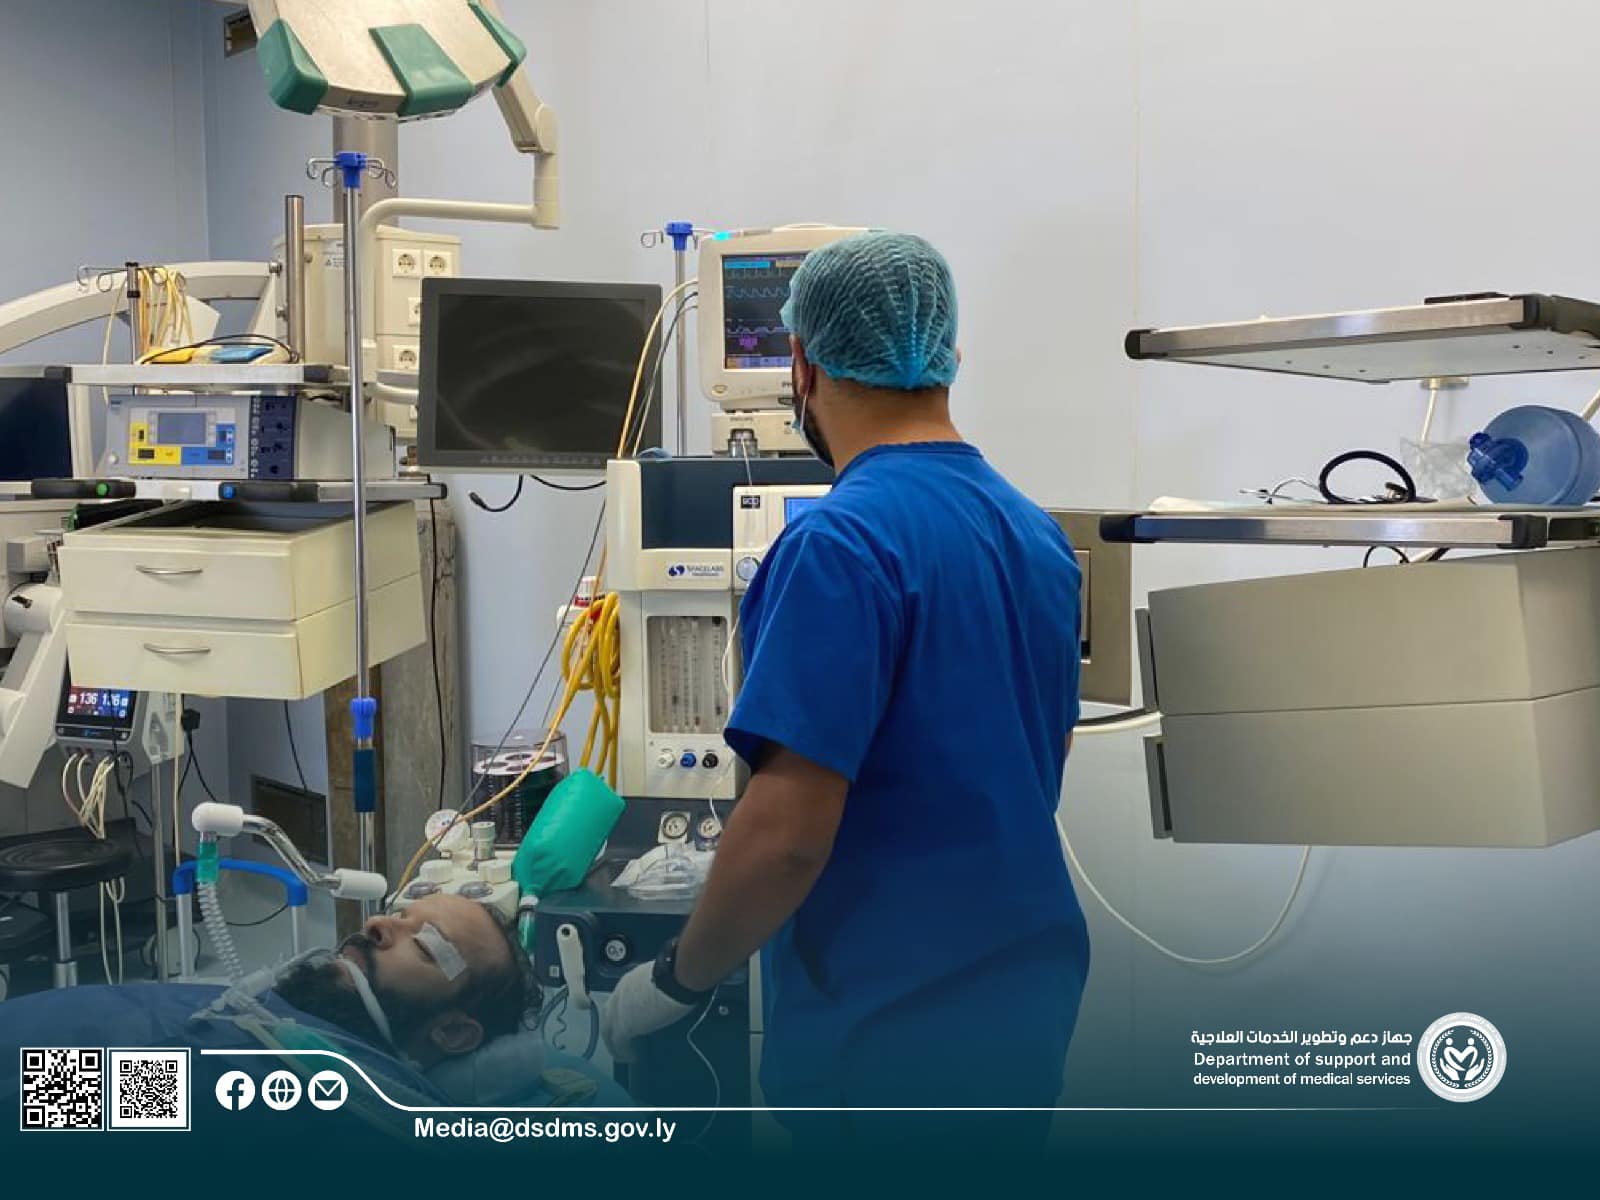 قسم العظام والمفاصل بمستشفى أبوسليـم يجري عمليات تغييـر مفاصل العظام  .